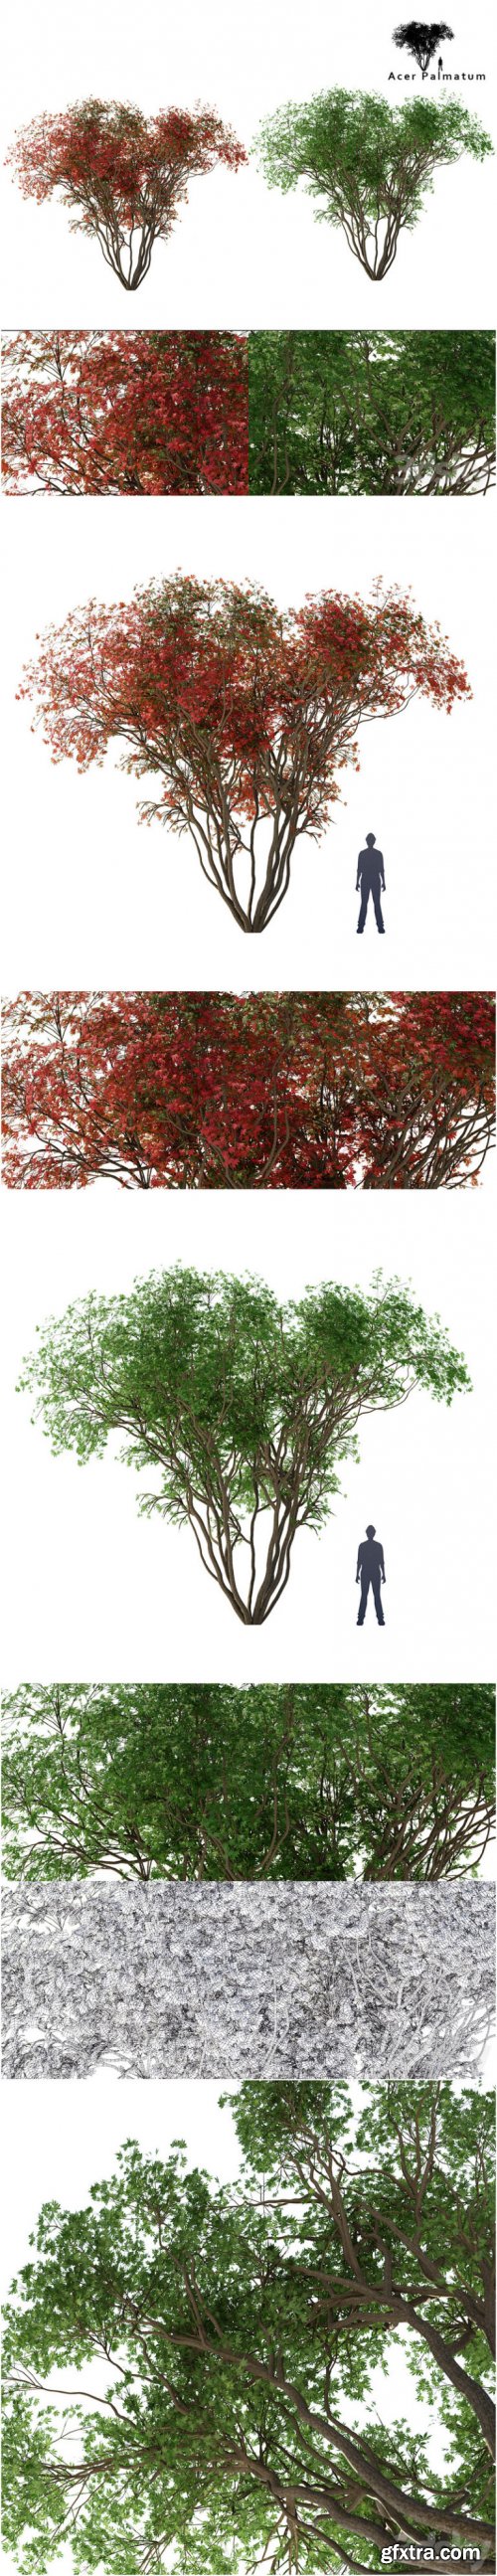 Japanese maple season 2 Acer palmatum tree